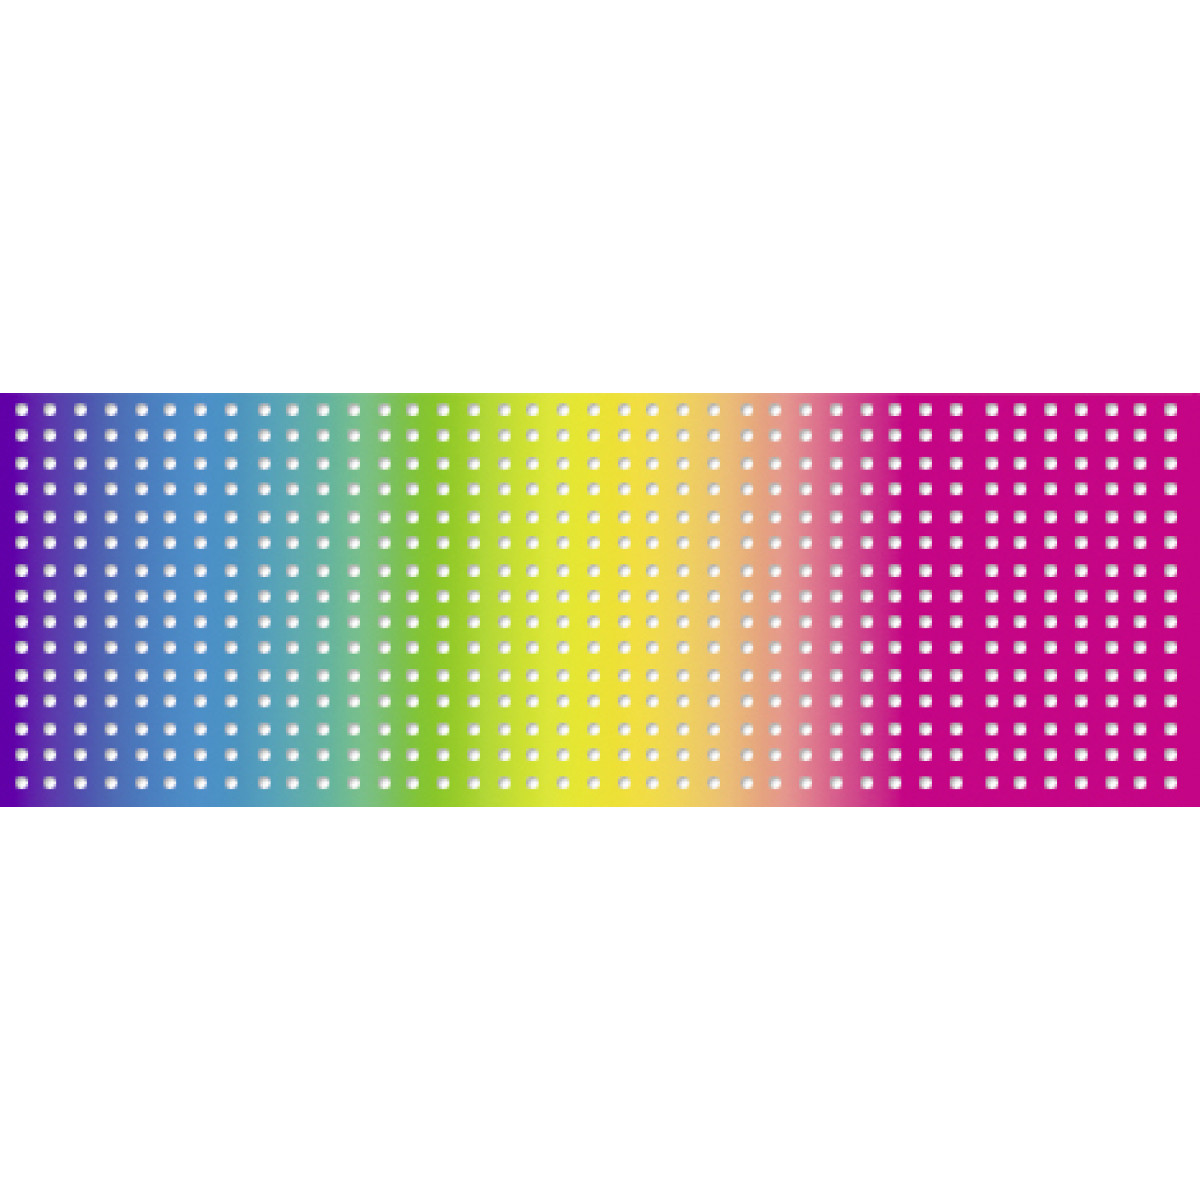 Regenbogen-Stickkarton 300 g/qm 34 x 50 cm - 10 Blatt sortiert